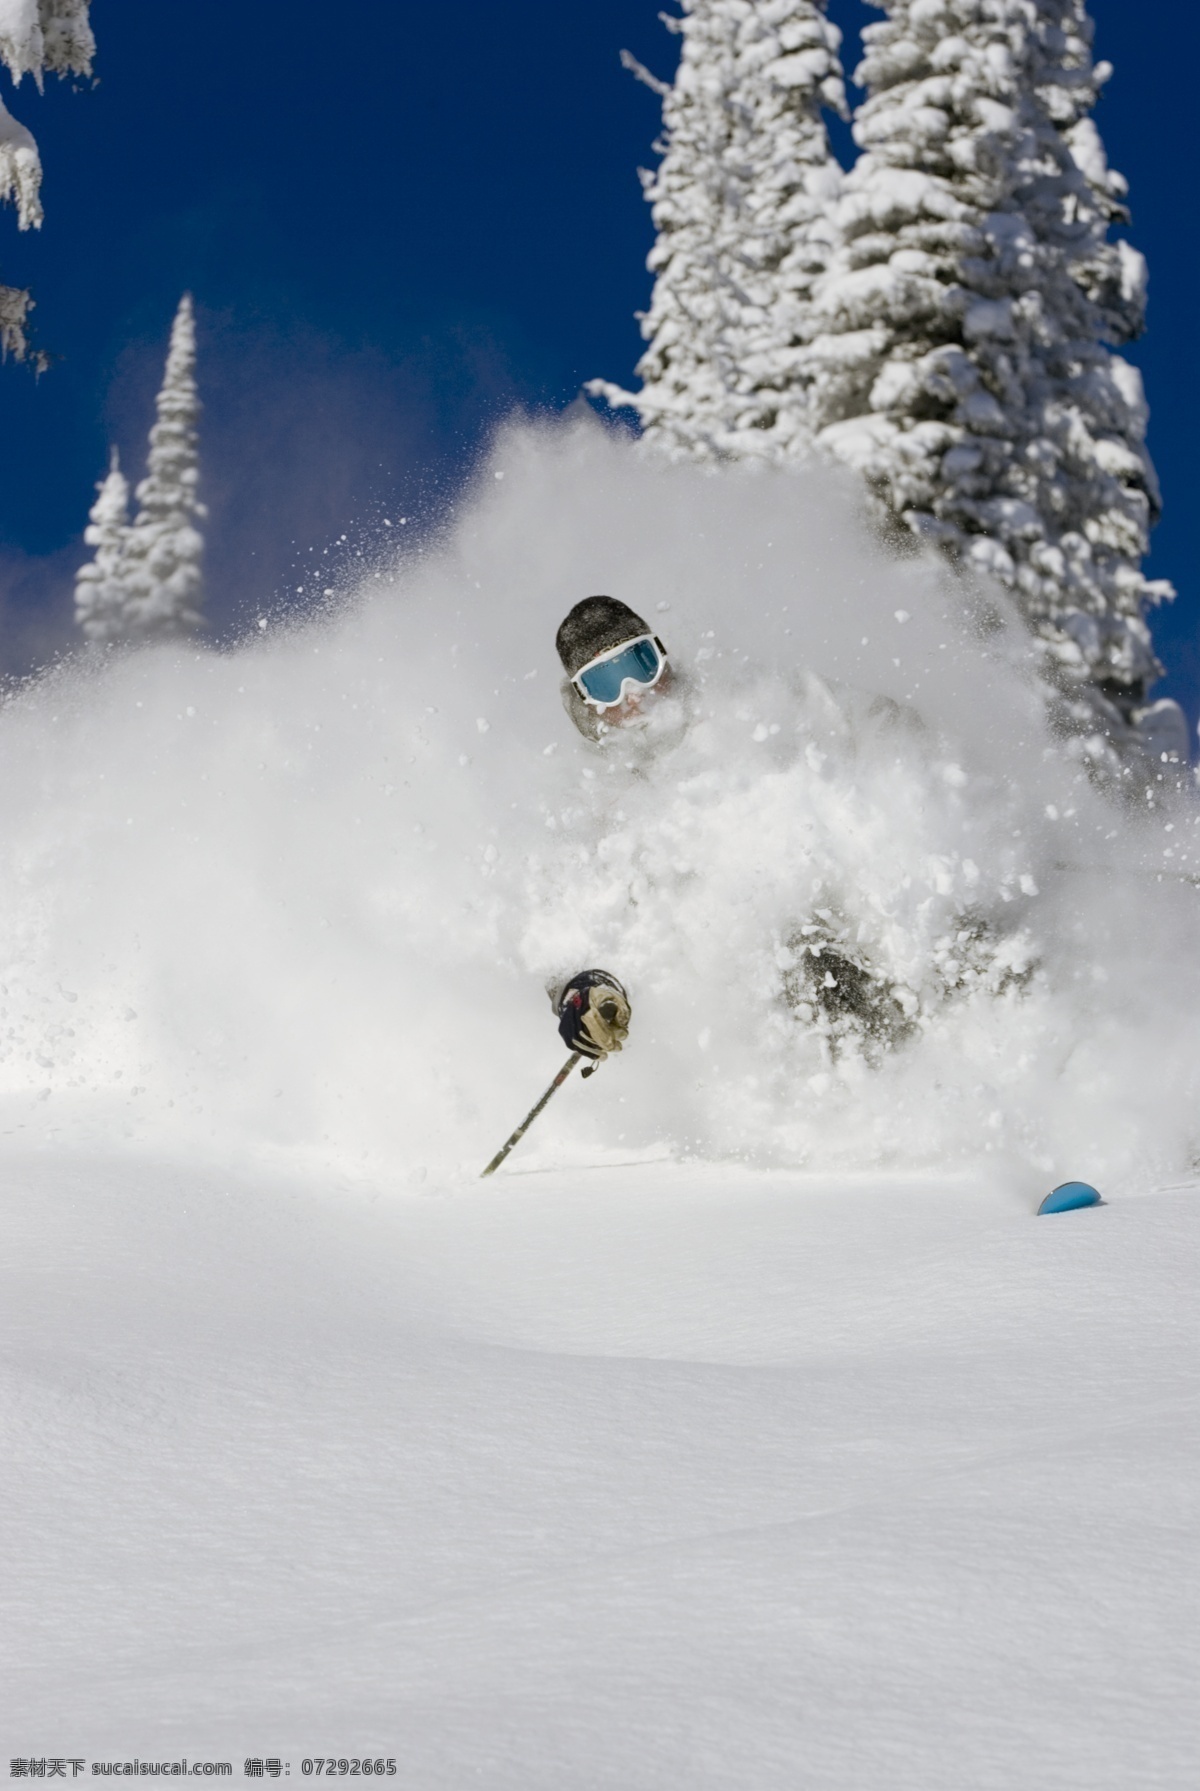 滑雪 运动员 高清 冬天 雪地运动 划雪运动 极限运动 体育项目 下滑 速度 运动图片 生活百科 雪山 美丽 雪景 风景 摄影图片 高清图片 体育运动 灰色